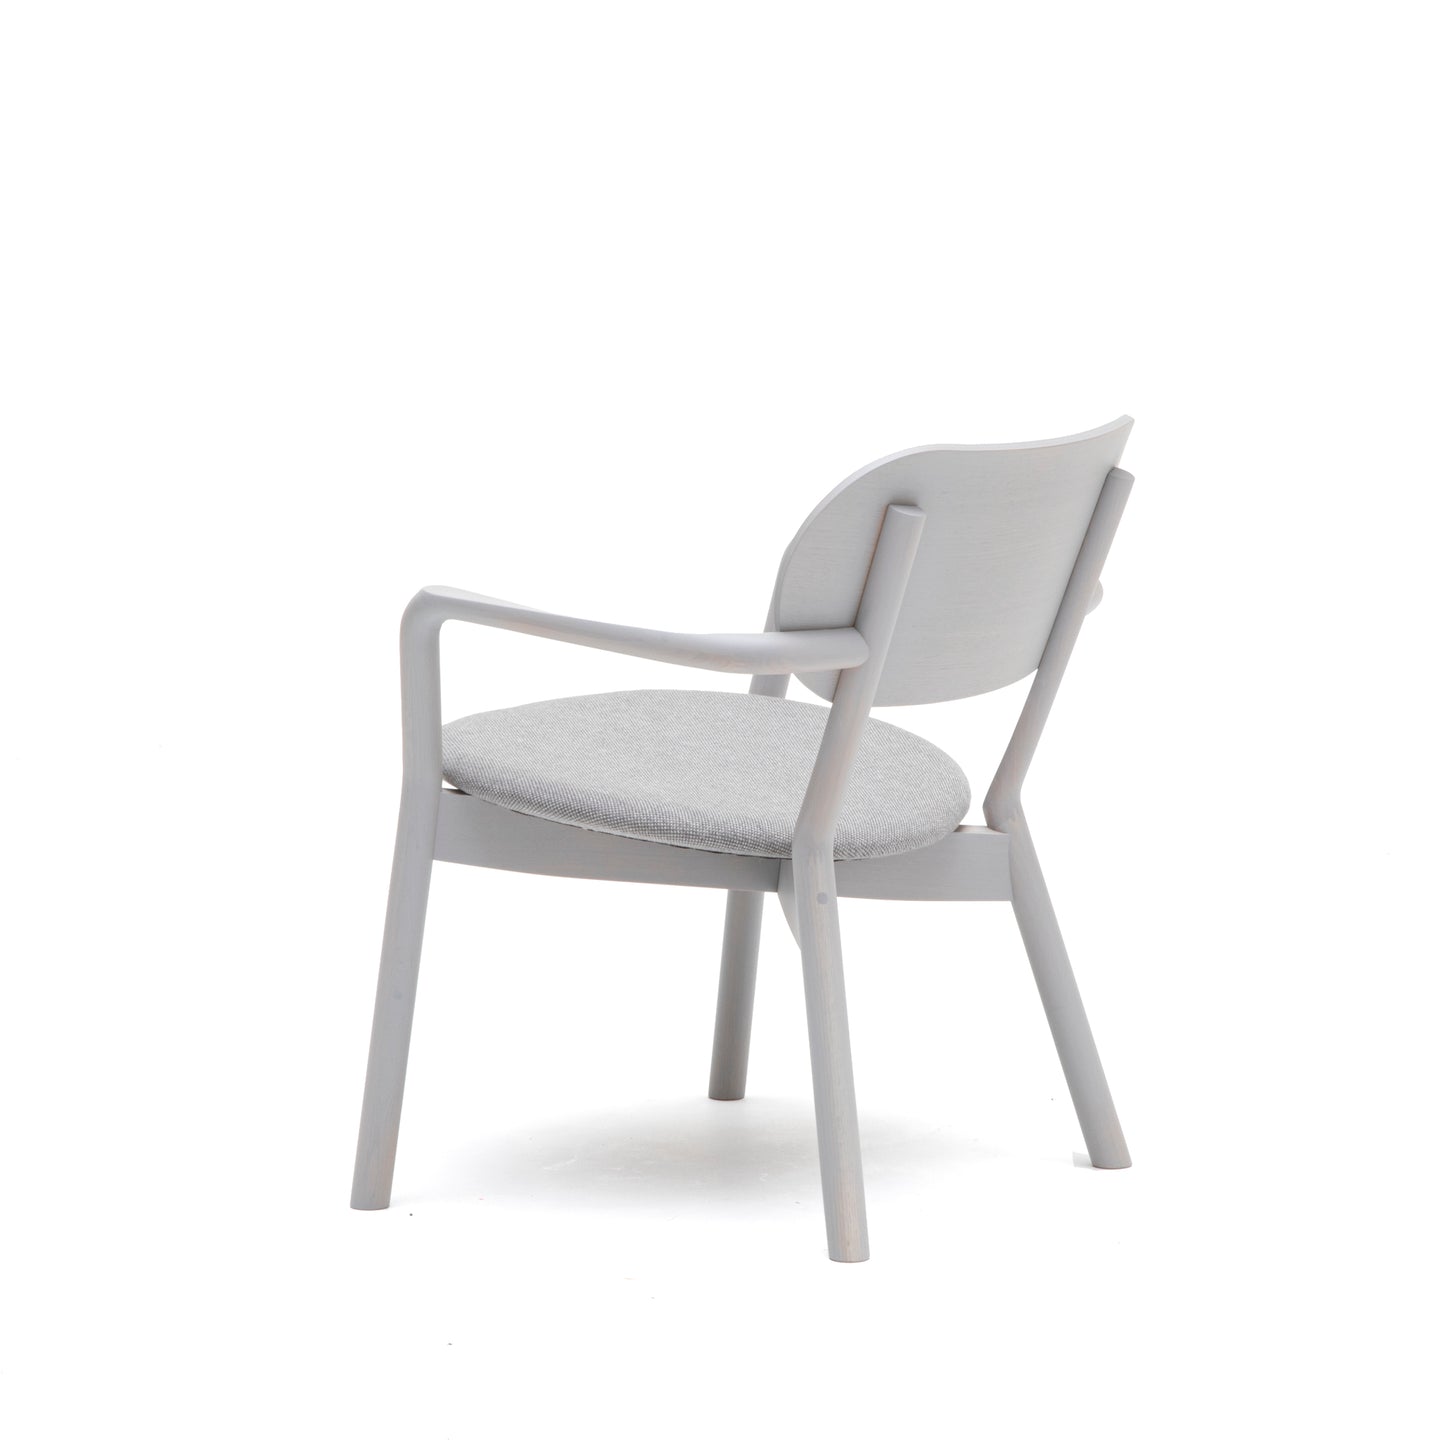 Castor Low Chair Pad | キャストールローチェアパッド